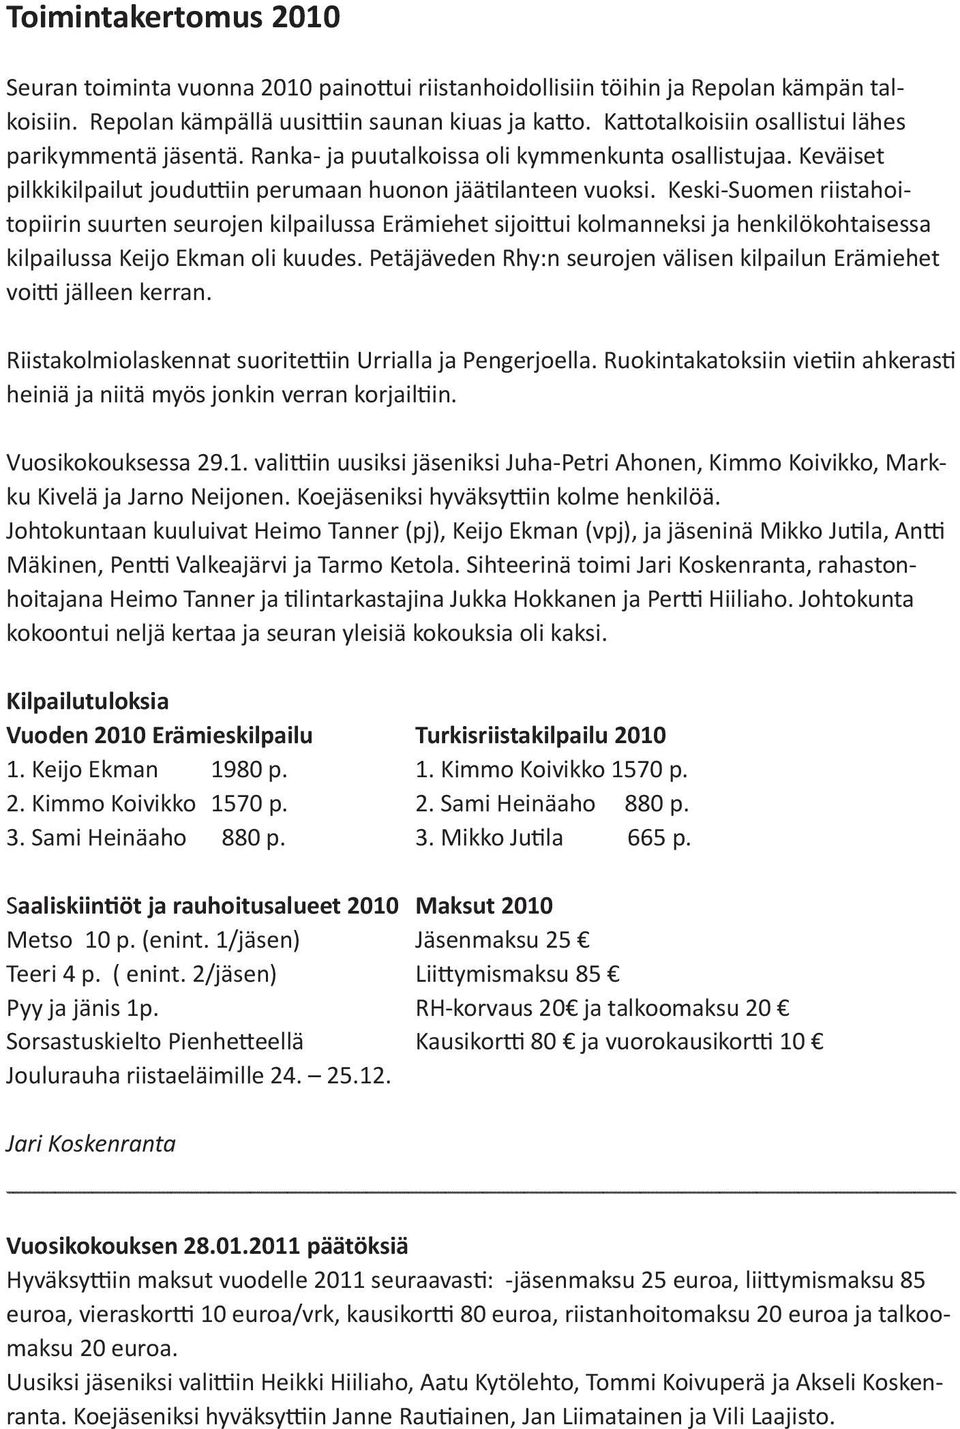 Keski-Suomen riistahoitopiirin suurten seurojen kilpailussa Erämiehet sijoittui kolmanneksi ja henkilökohtaisessa kilpailussa Keijo Ekman oli kuudes.